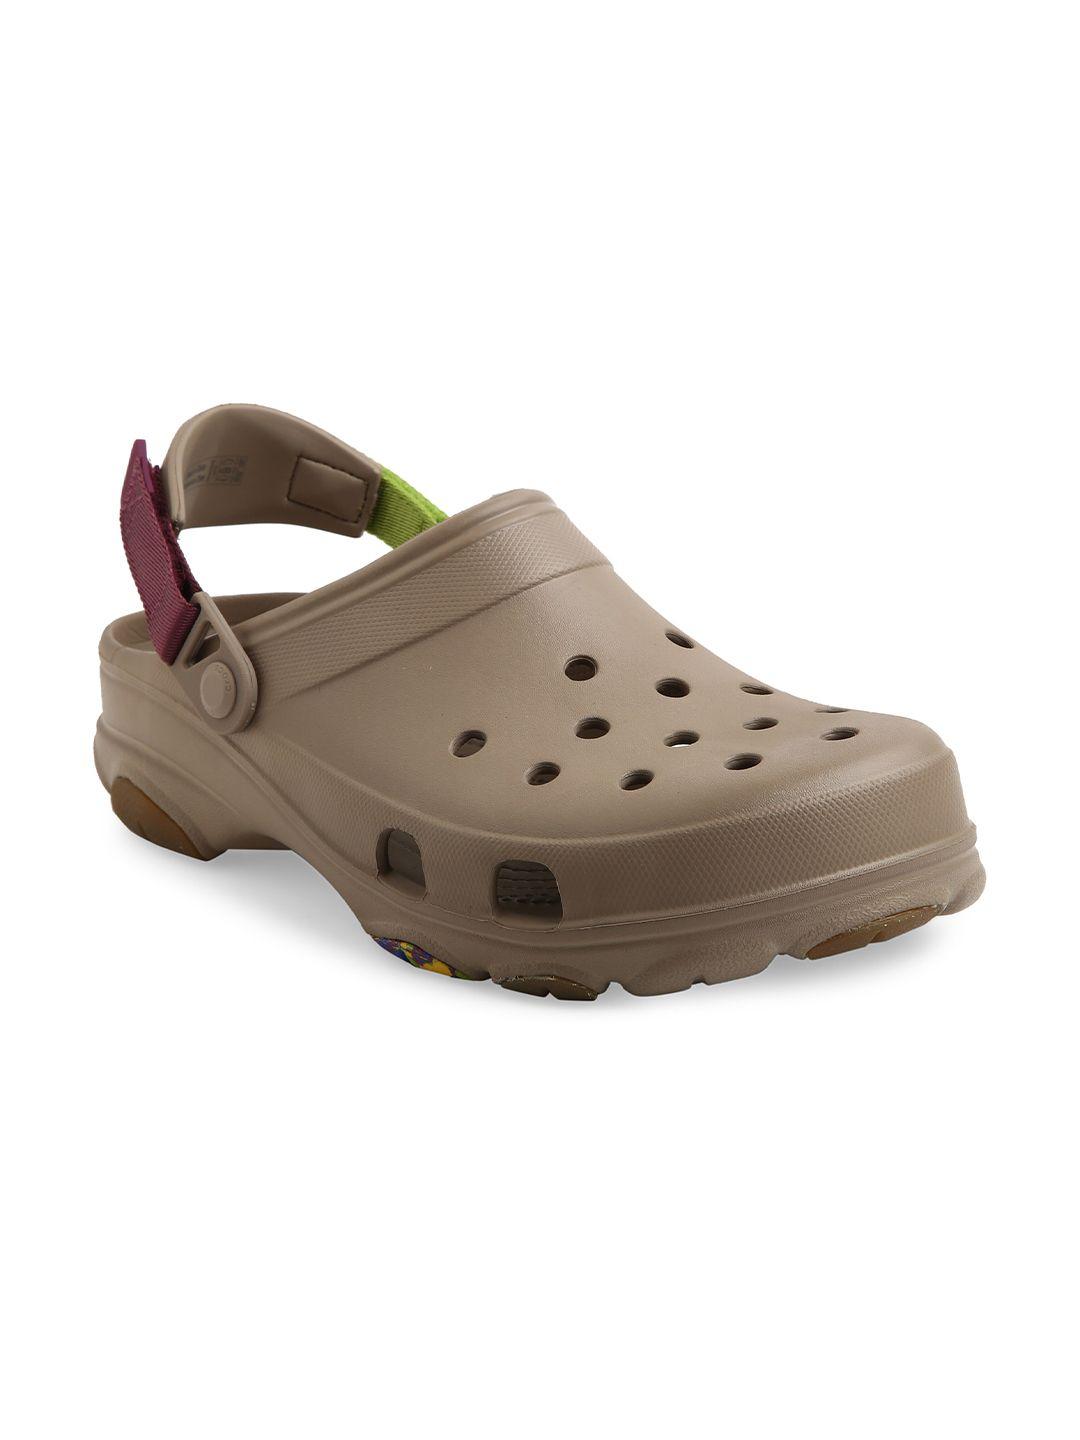 crocs clogs sandals